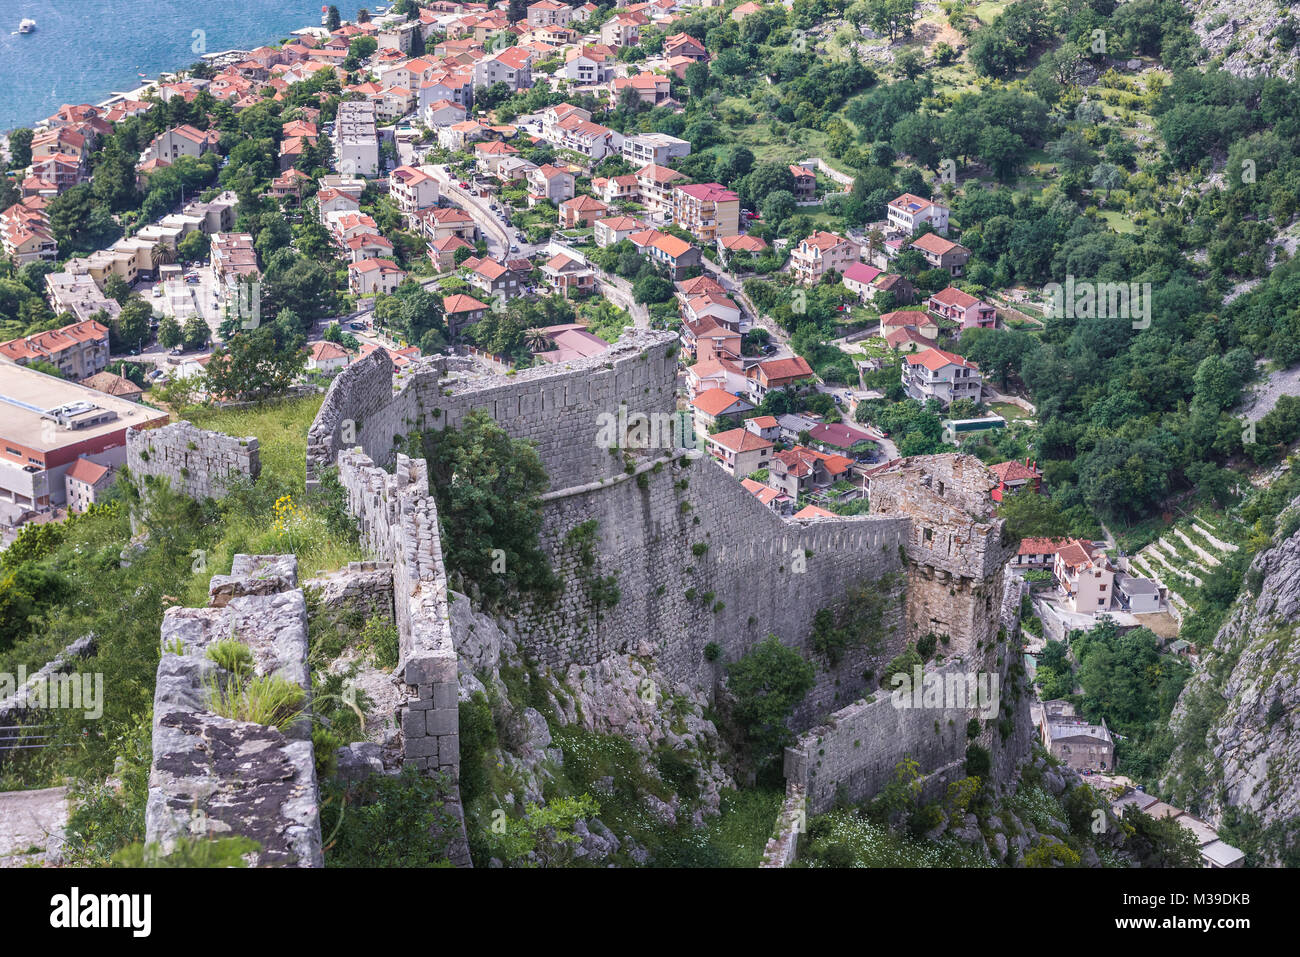 Resti di antiche città vecchia intorno a San Giovanni nella fortezza di Cattaro città costiera, situata nella Baia di Kotor del Mare Adriatico, Montenegro Foto Stock